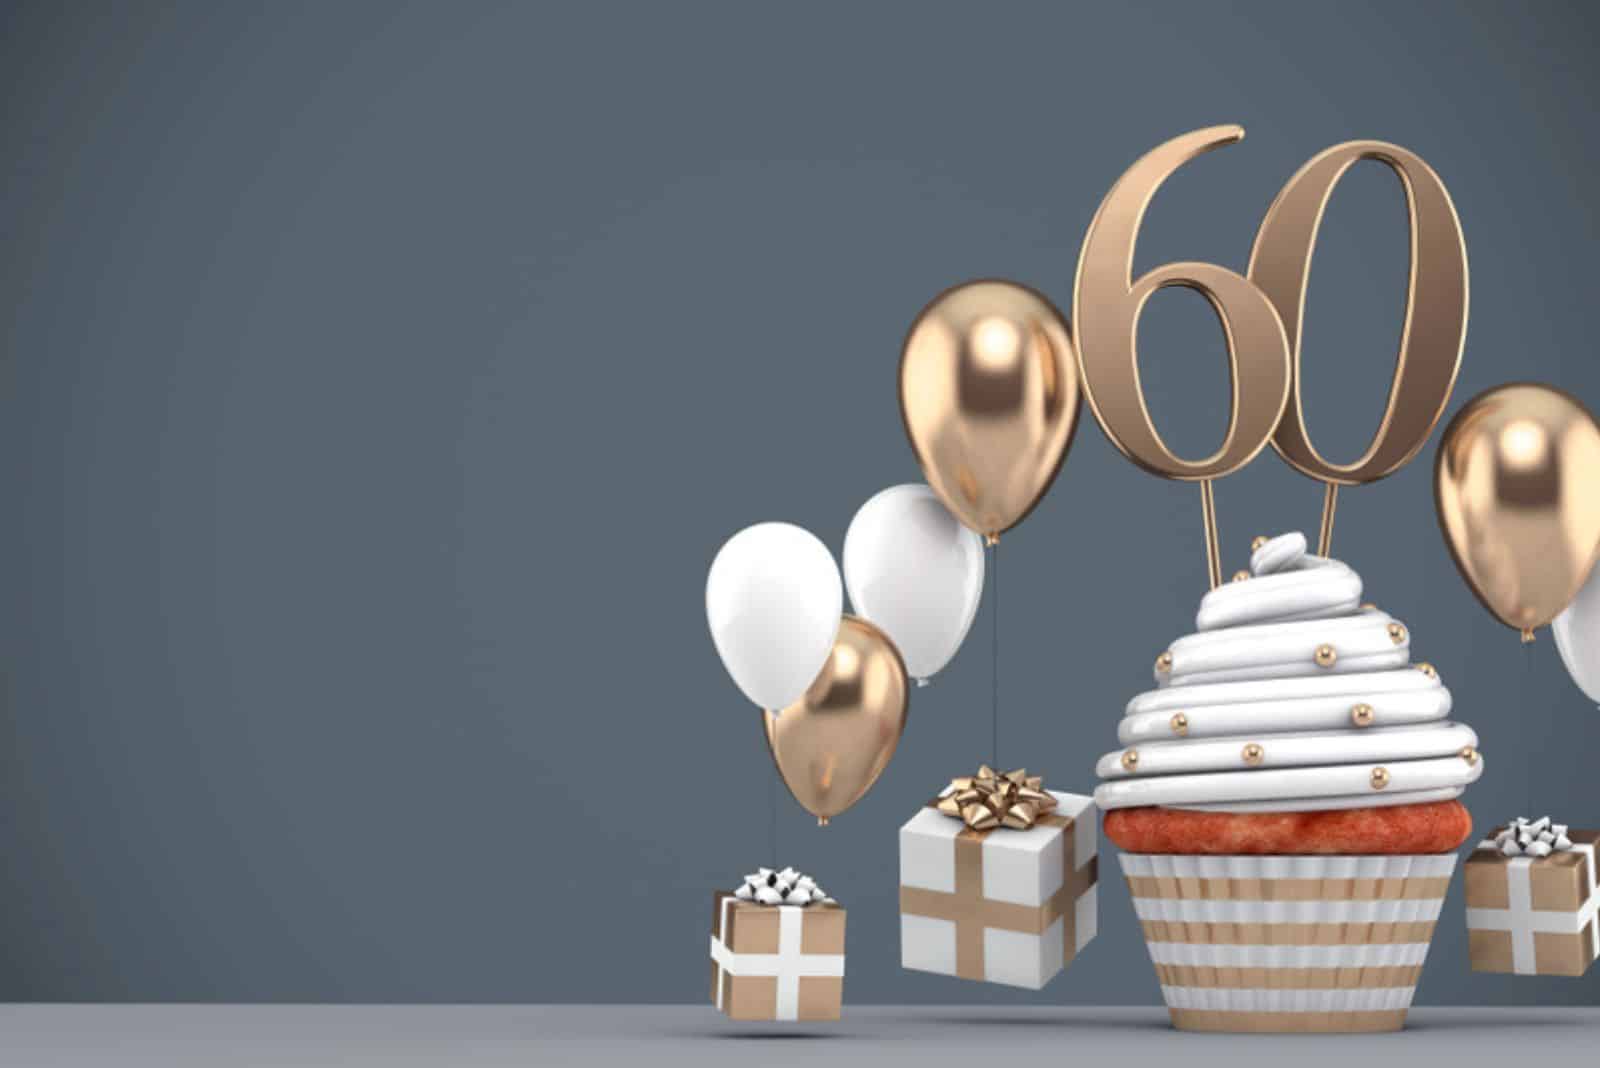 Cupcake d'anniversaire en or numéro 60 avec des ballons et des cadeaux